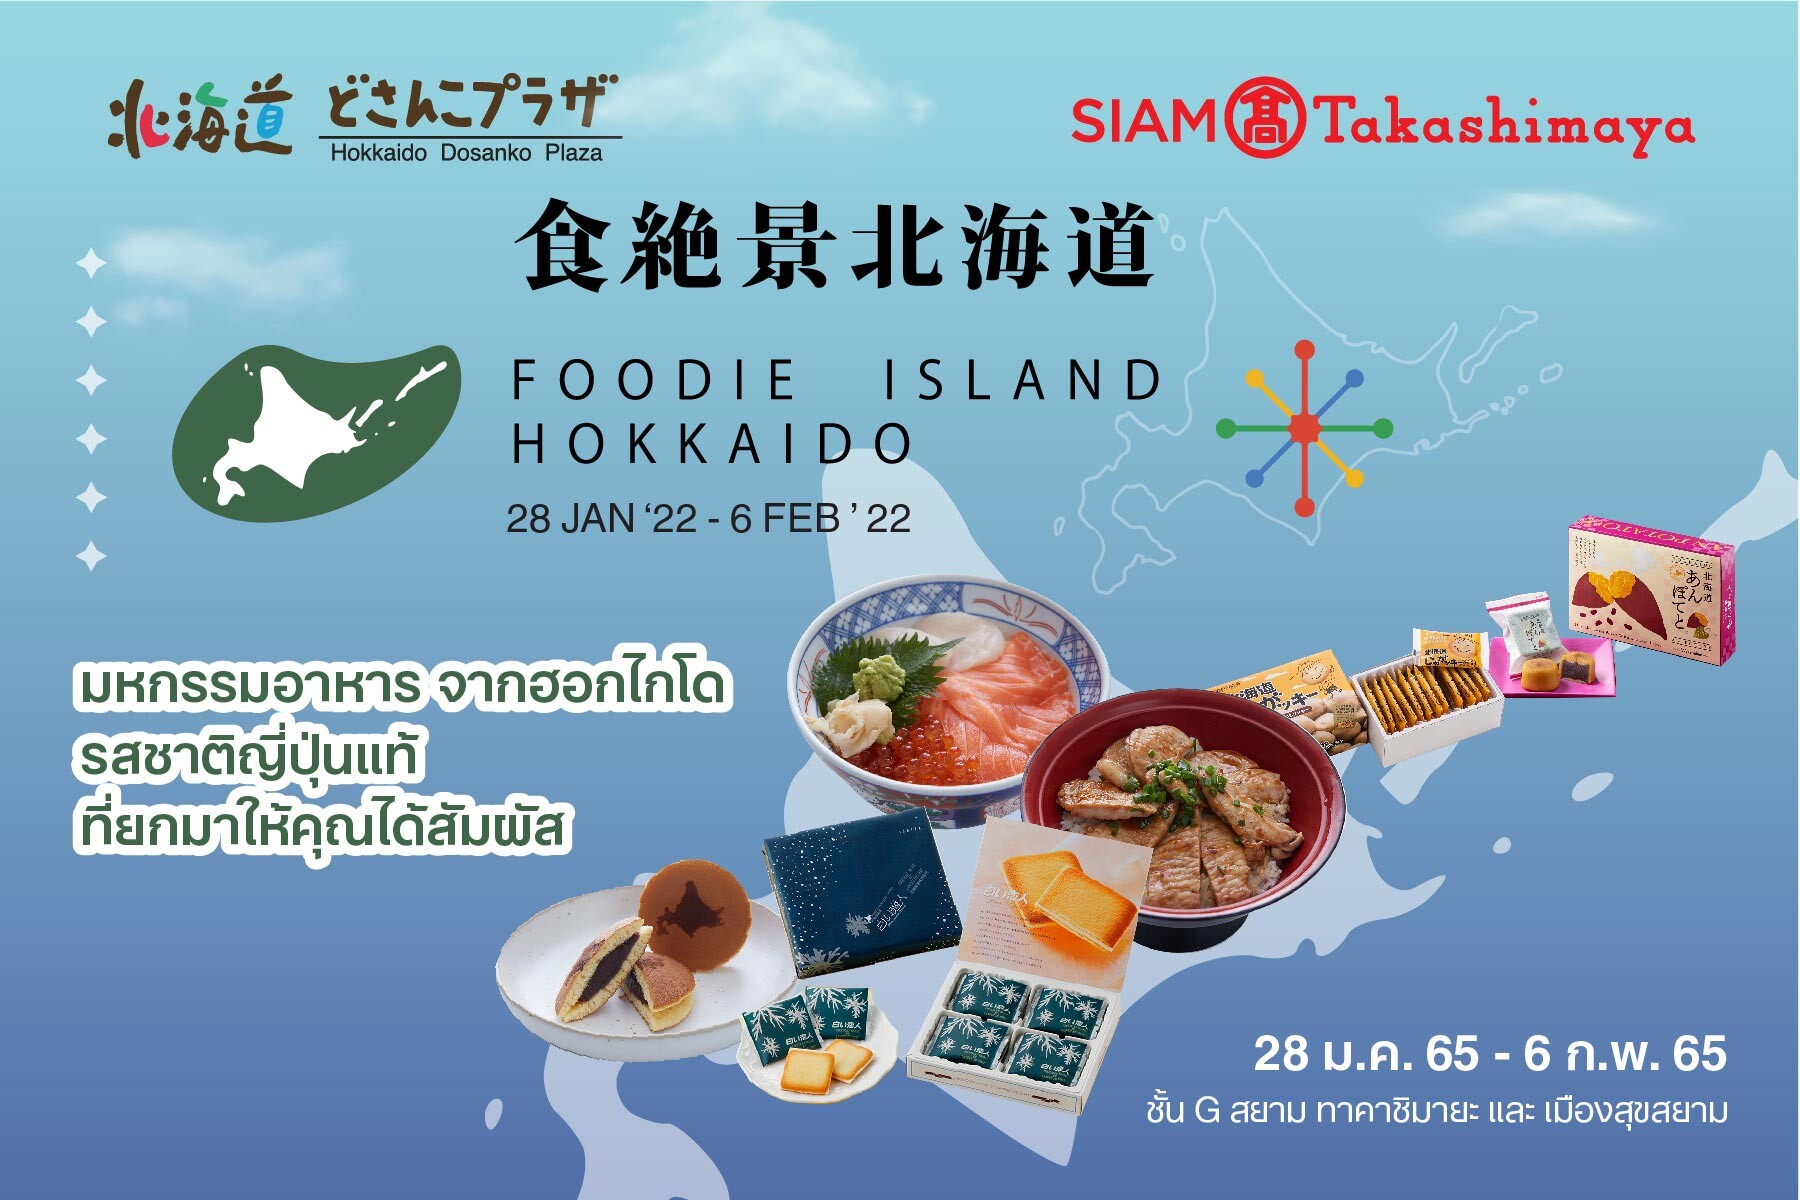 ห้างสรรพสินค้าสยาม ทาคาชิมายะ จับมือ รัฐบาลฮอกไกโด จัดงาน Foodie Island Hokkaido เอาใจคนรักฮอกไกโด วันที่ 28 มกราคม - 6 กุมภาพันธ์ ศกนี้